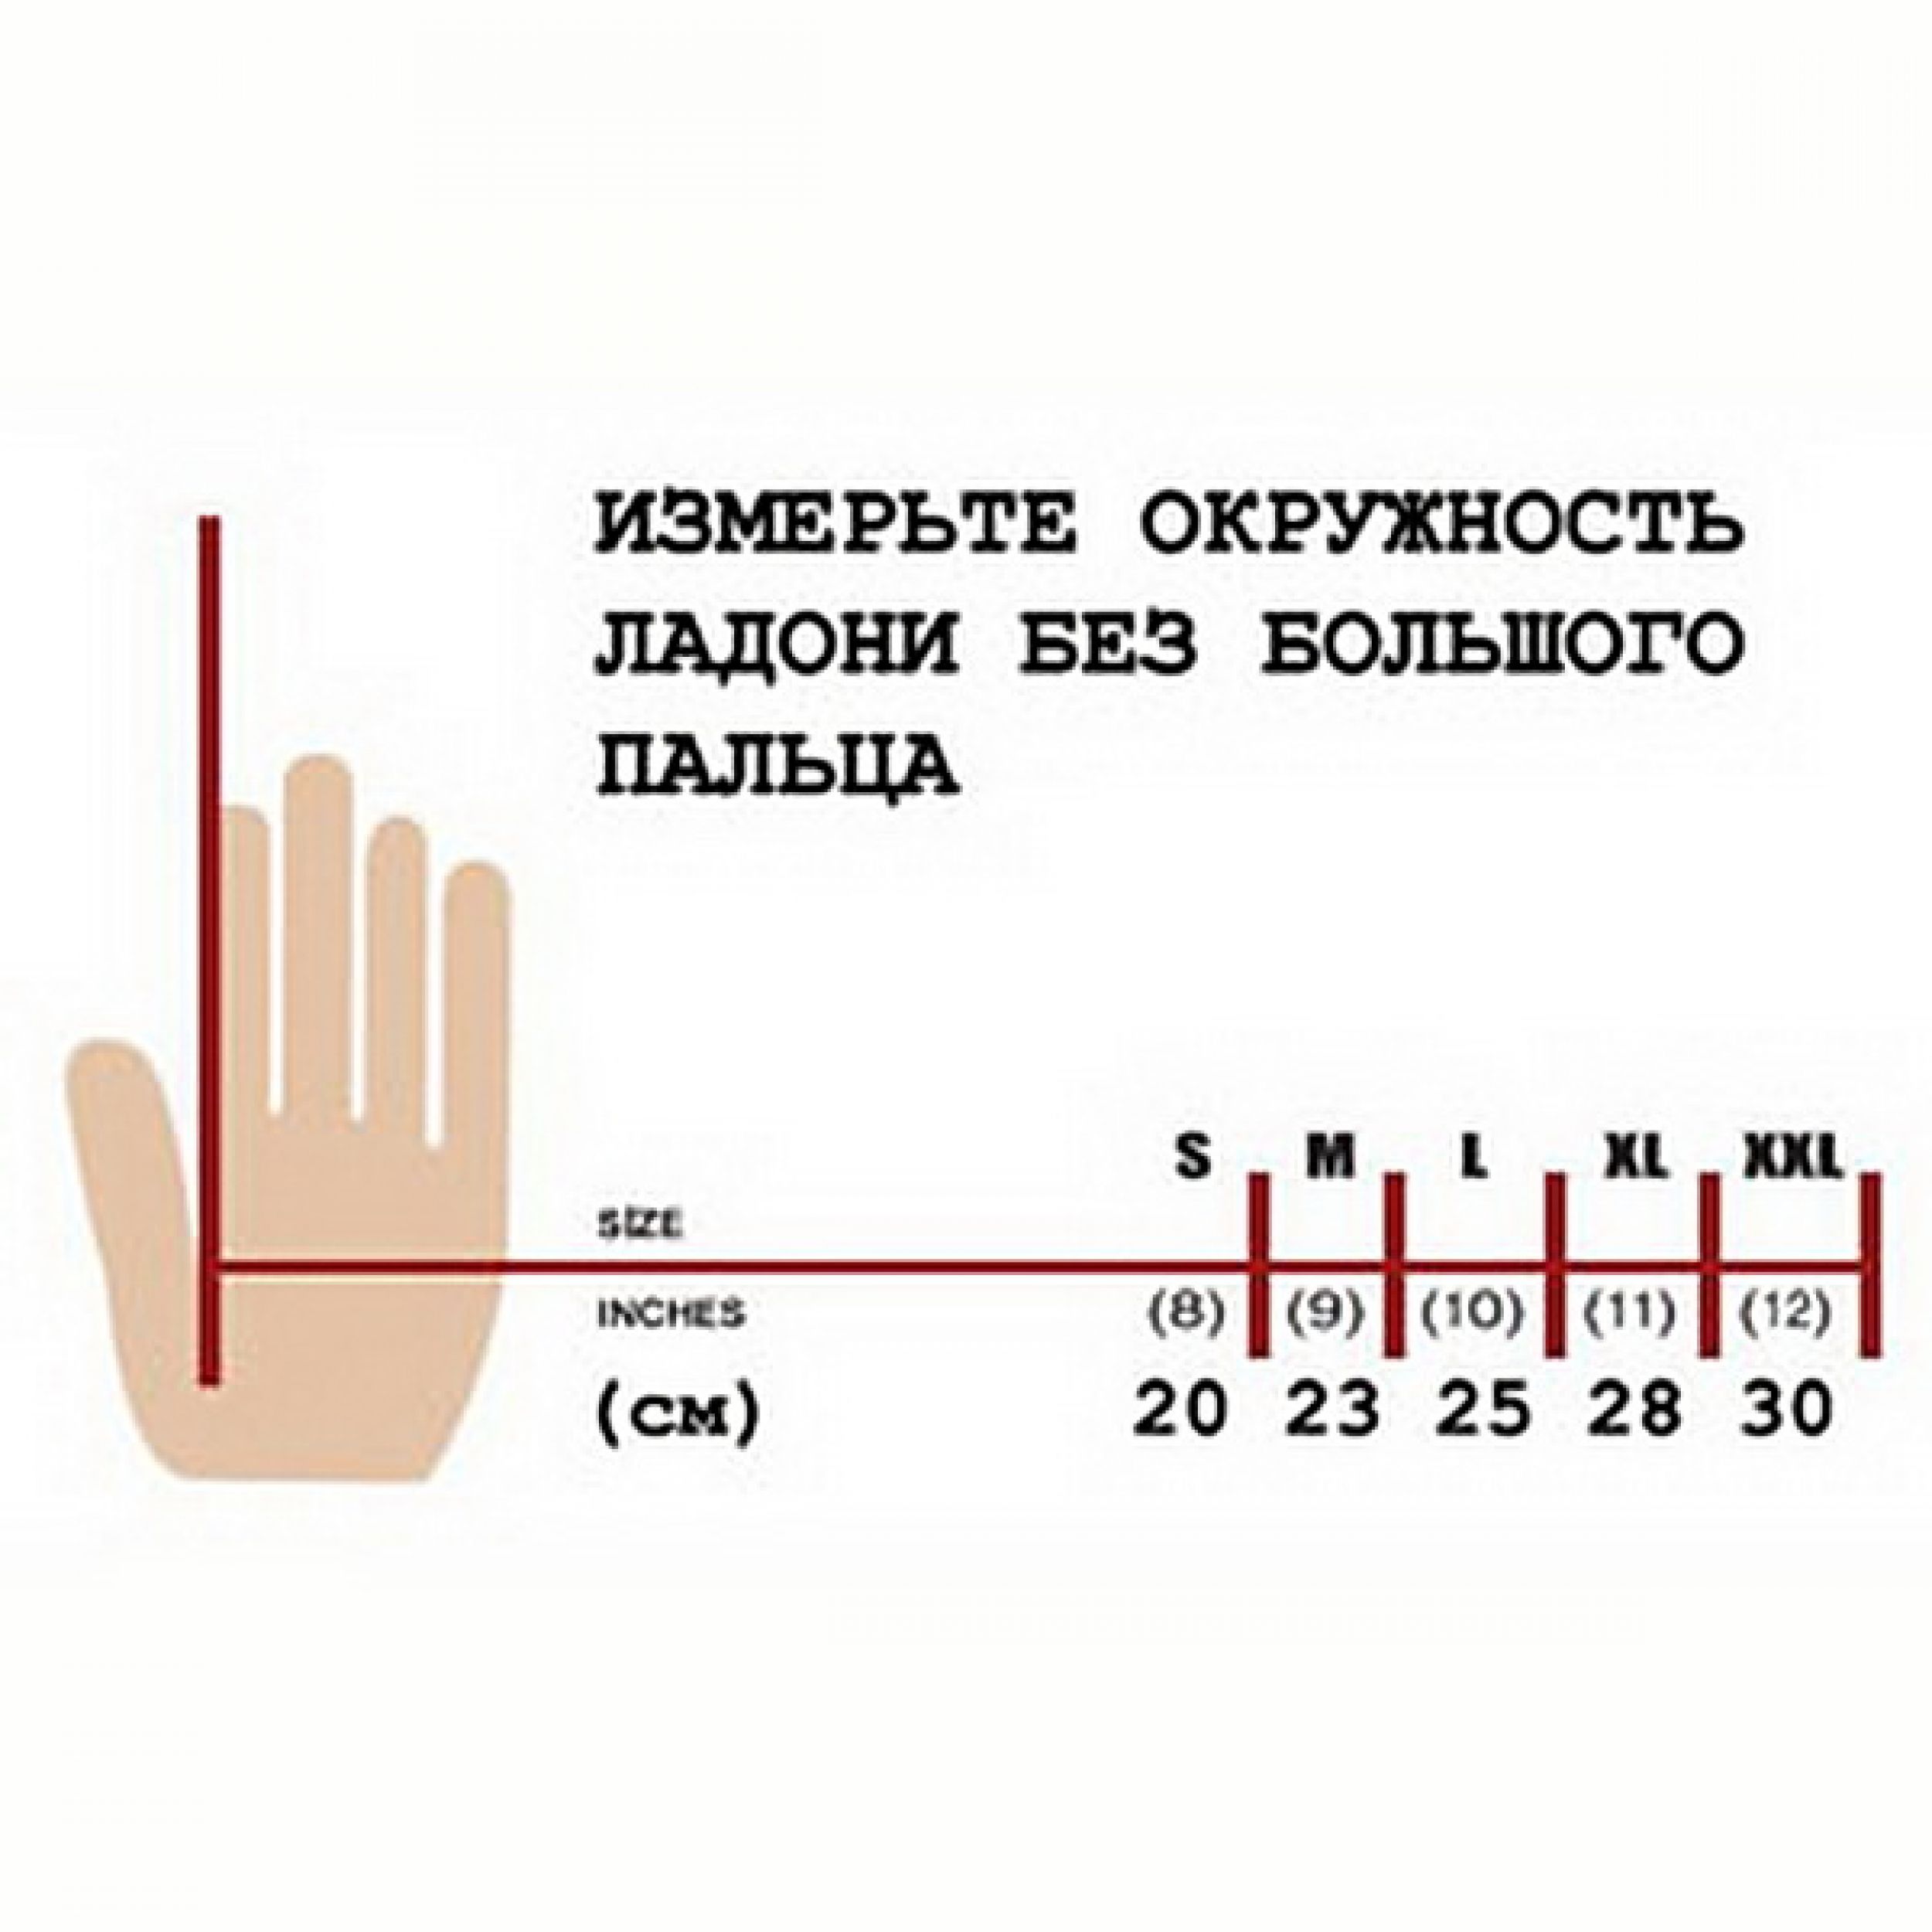 длина члена и пальцы рук фото 5